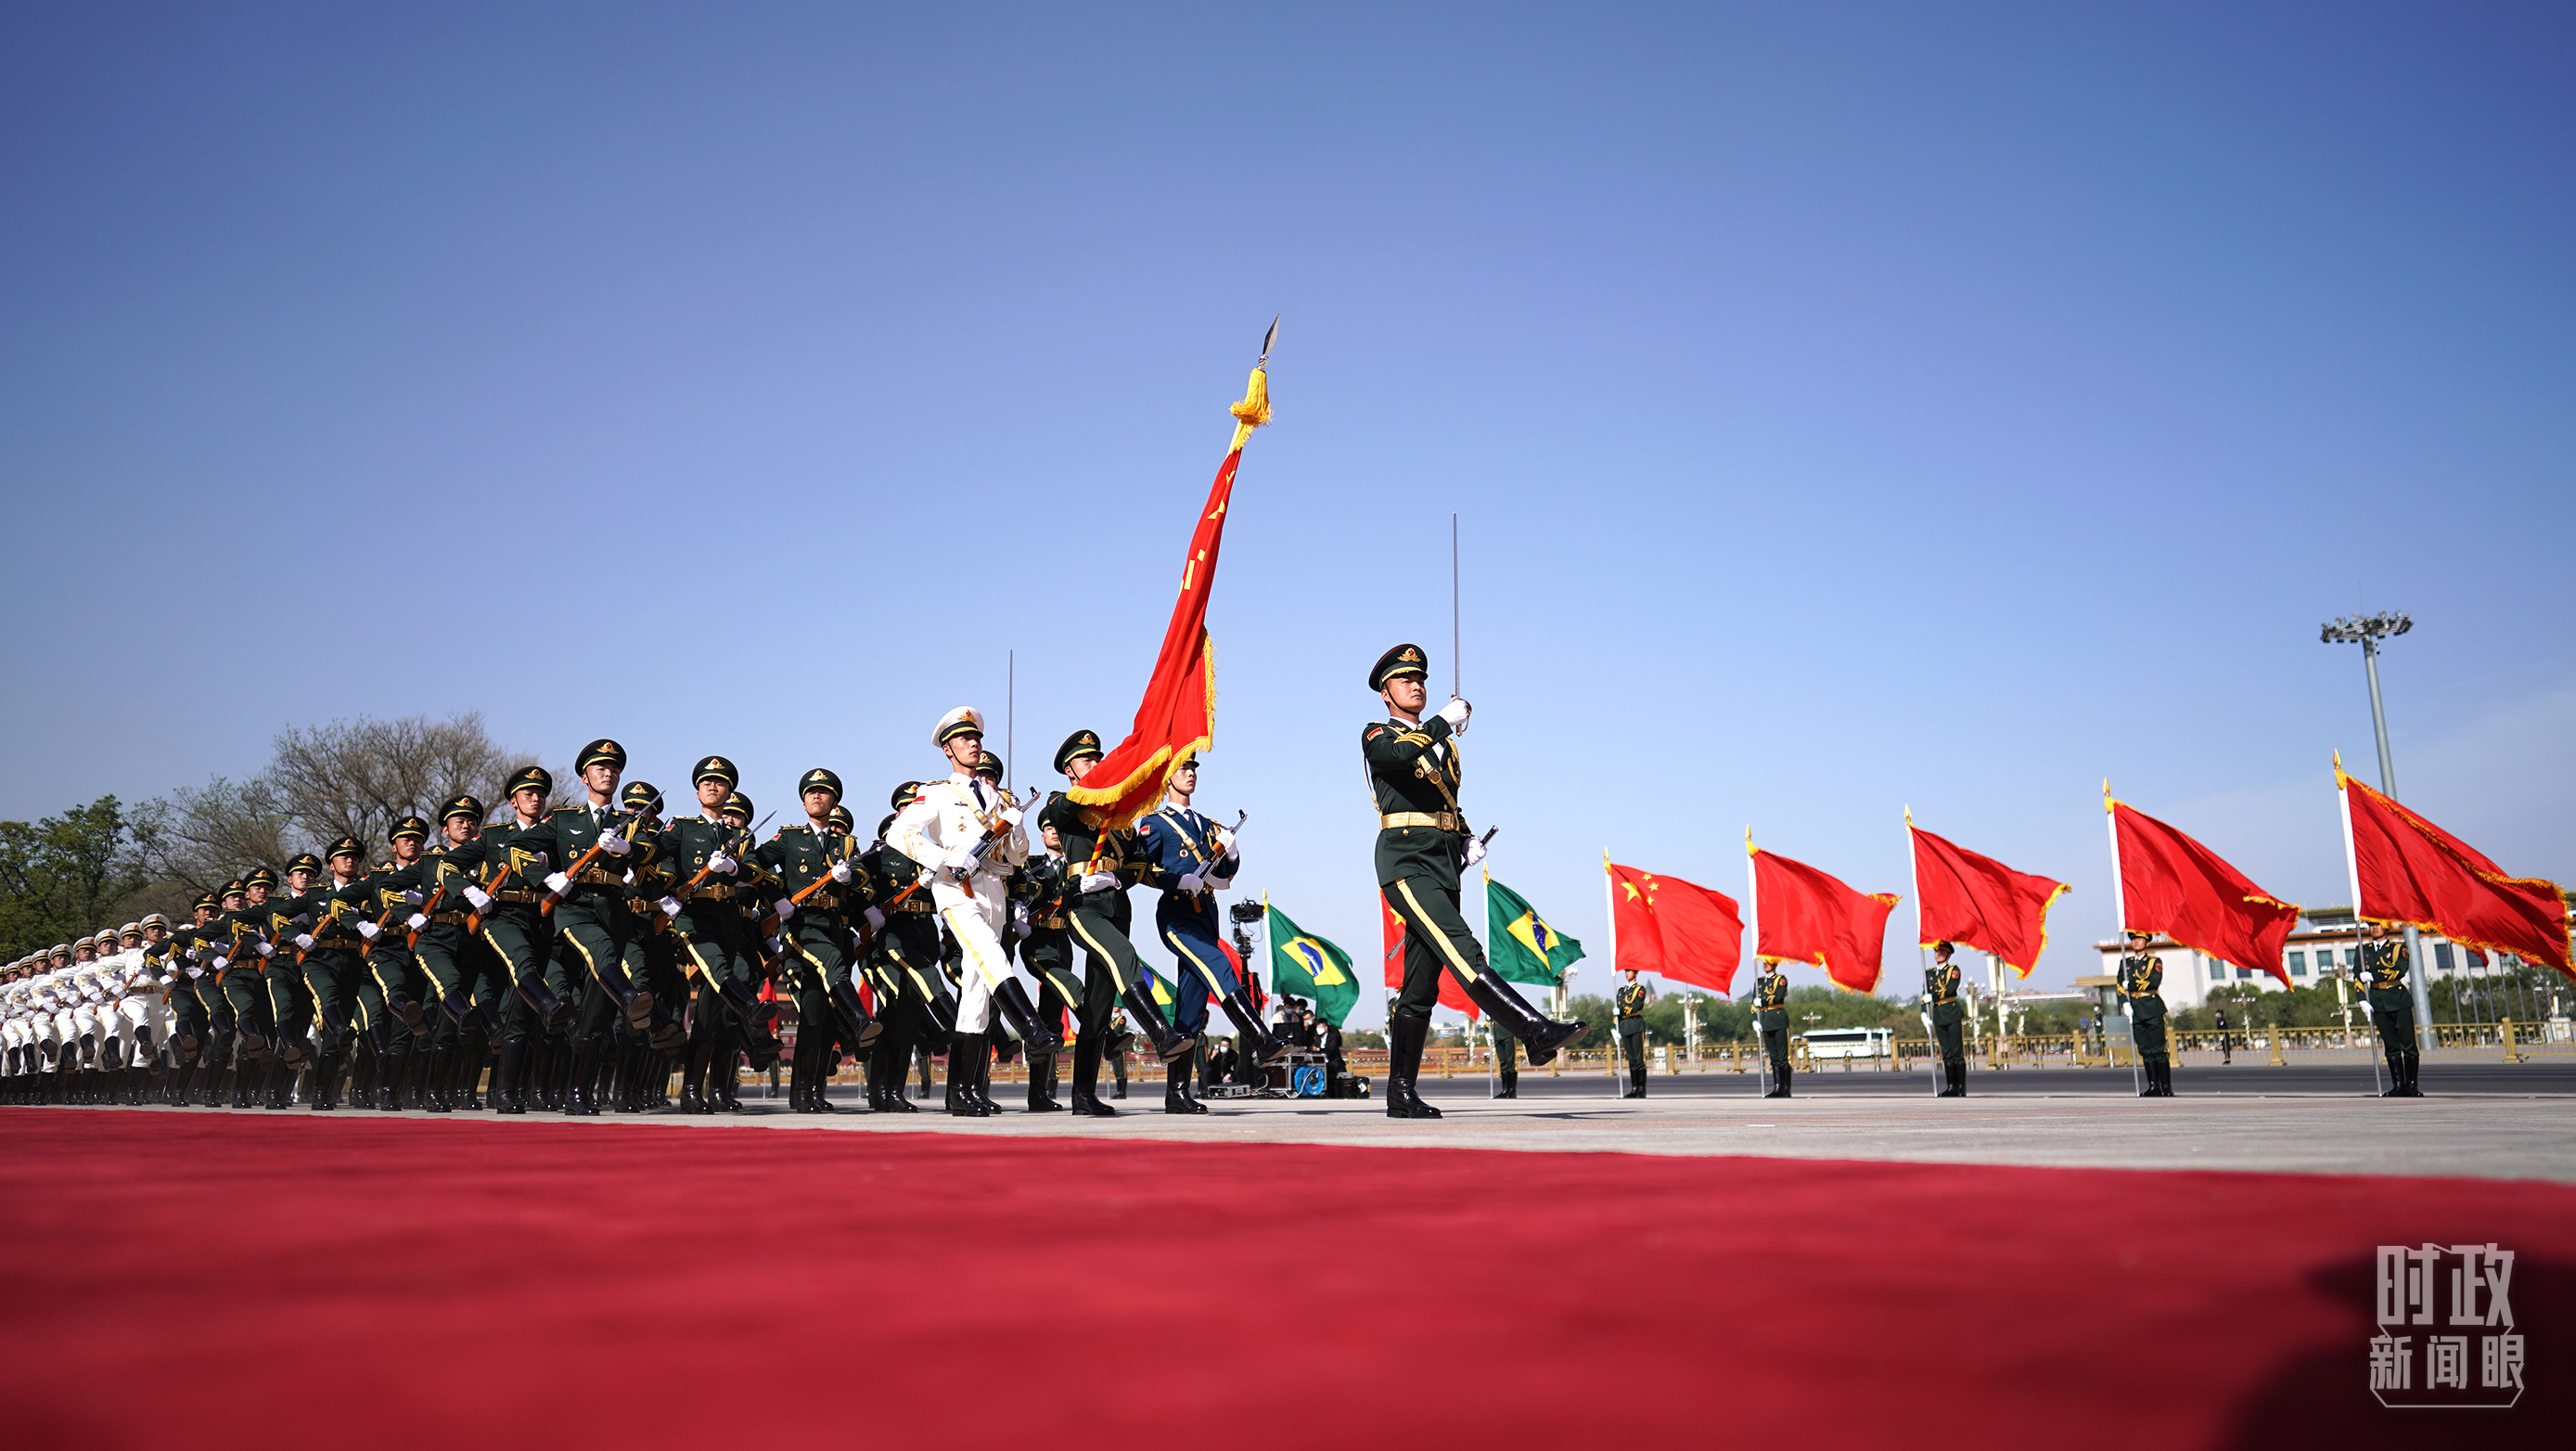 欢迎仪式现场的中国人民解放军仪仗队。（总台央视记者彭汉明拍摄）